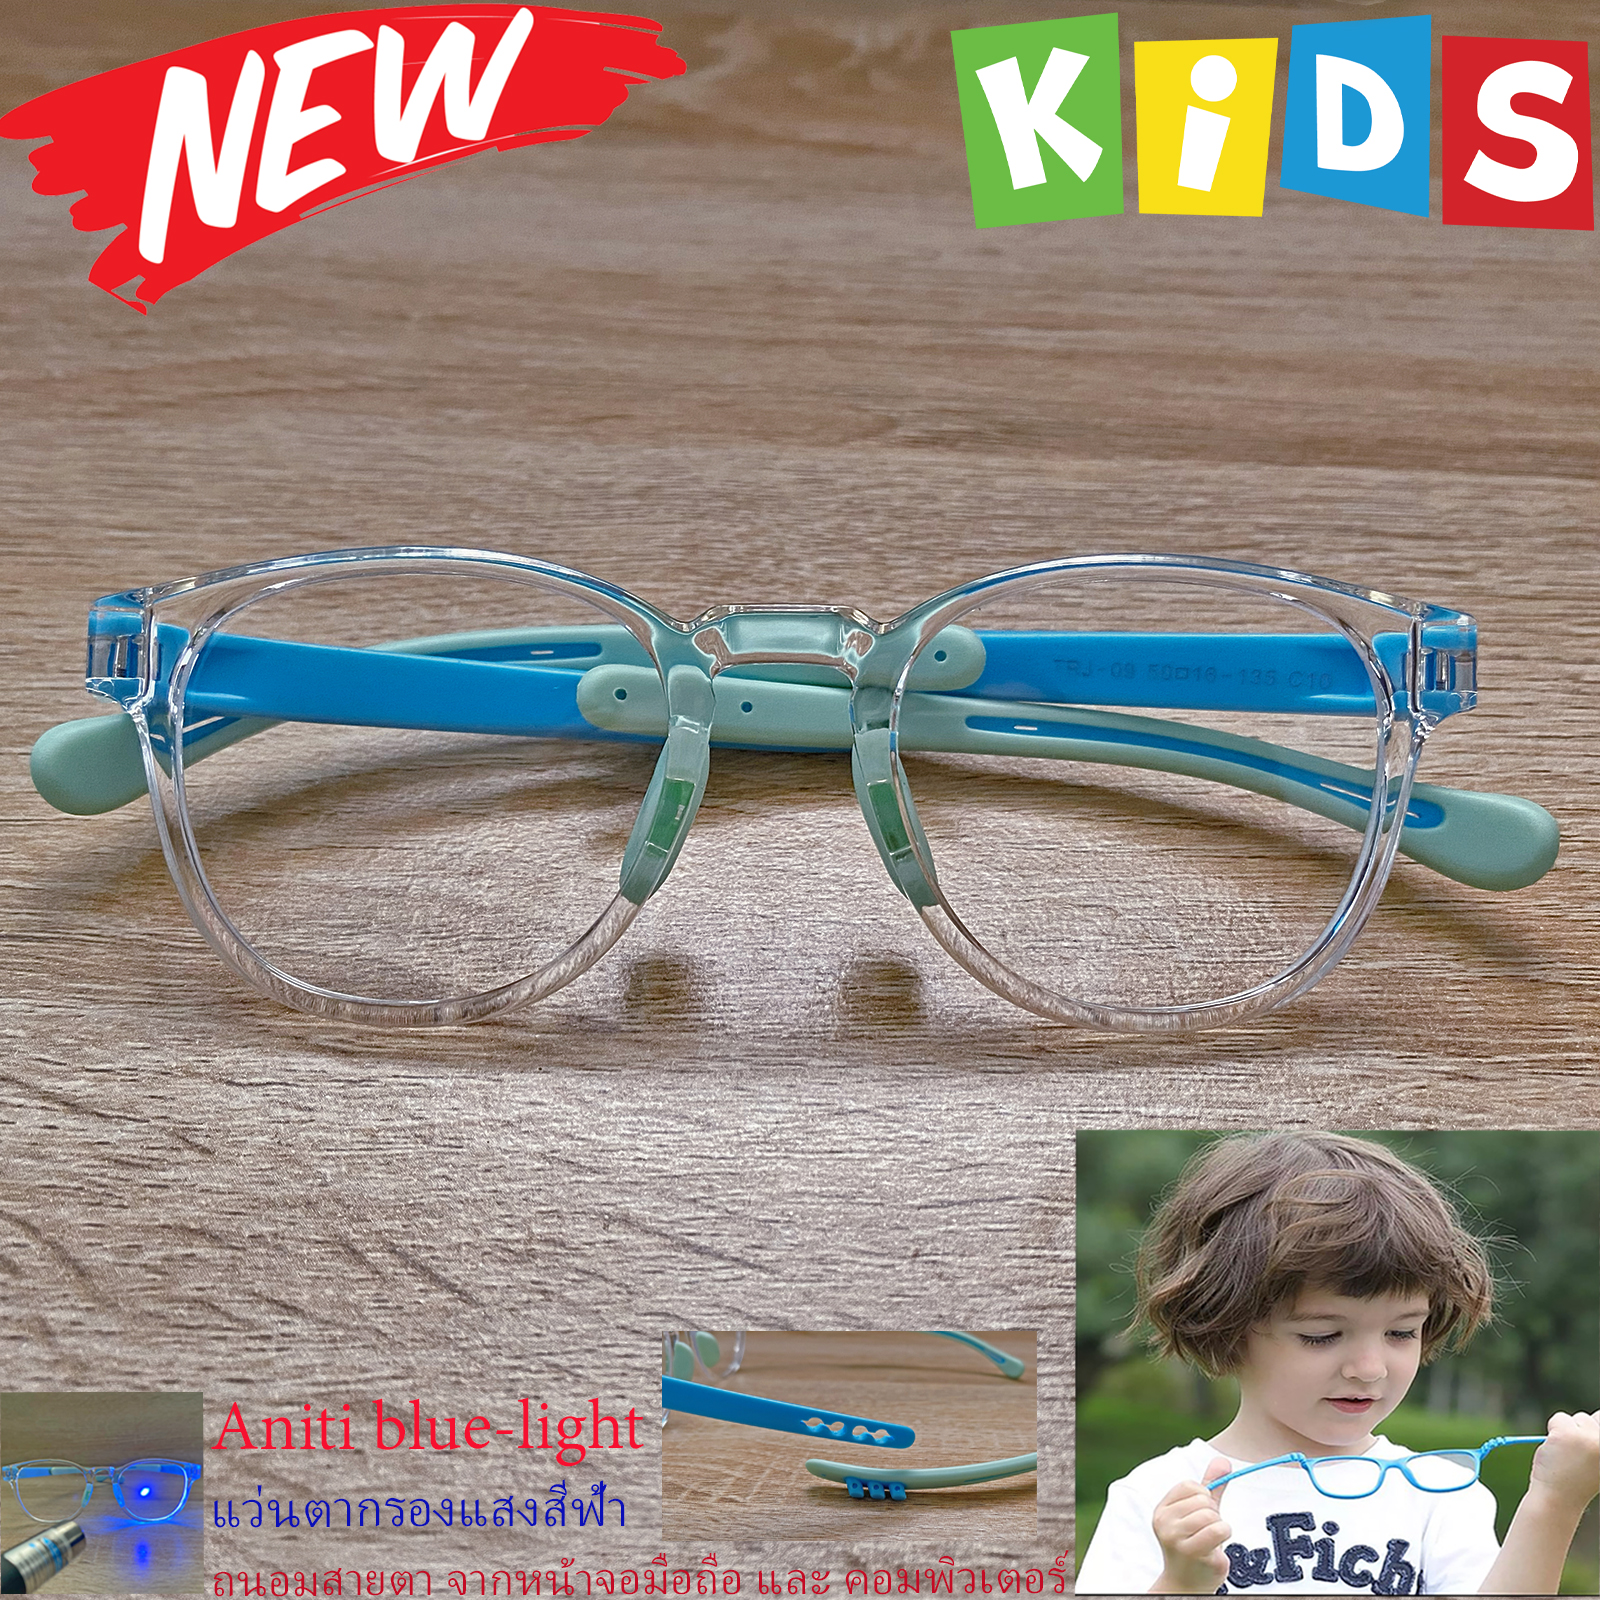 แว่นตาเด็ก กรองแสงสีฟ้า blue block แว่นเด็ก บลูบล็อค รุ่น 09 กรอบใส ขาข้อต่อยืดหยุ่น ขาปรับระดับได้ วัสดุTR90 เหมาะสำหรับเลนส์สายตา